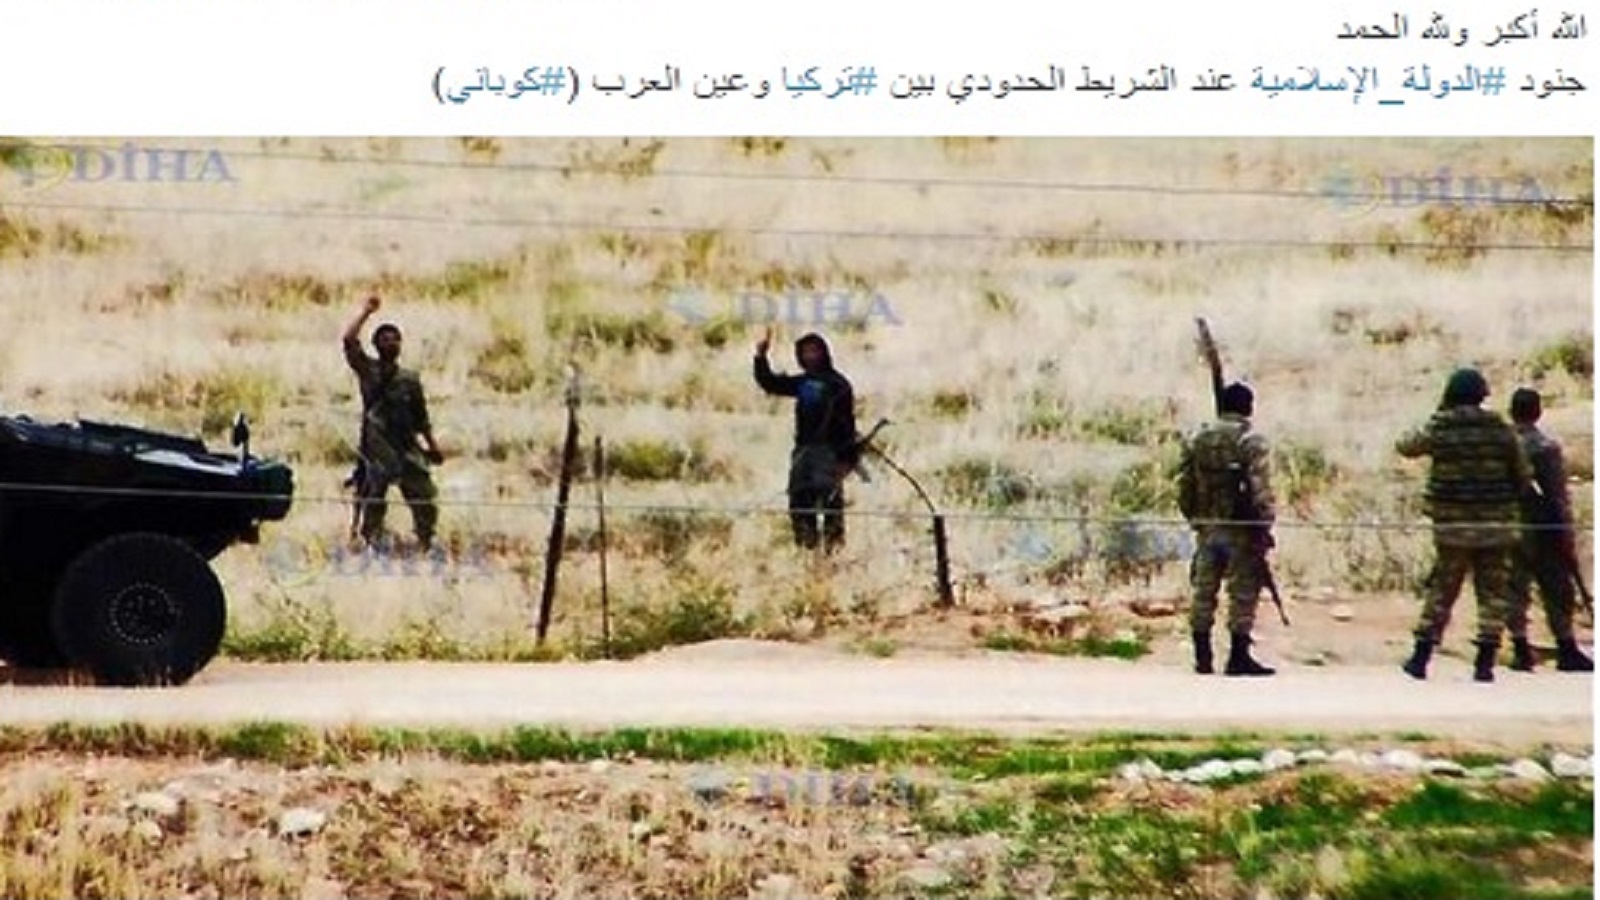 مقاتلين لـ"داعش" على الحدود السورية - التركية (عن مواقع مؤيدة للتنظيم)